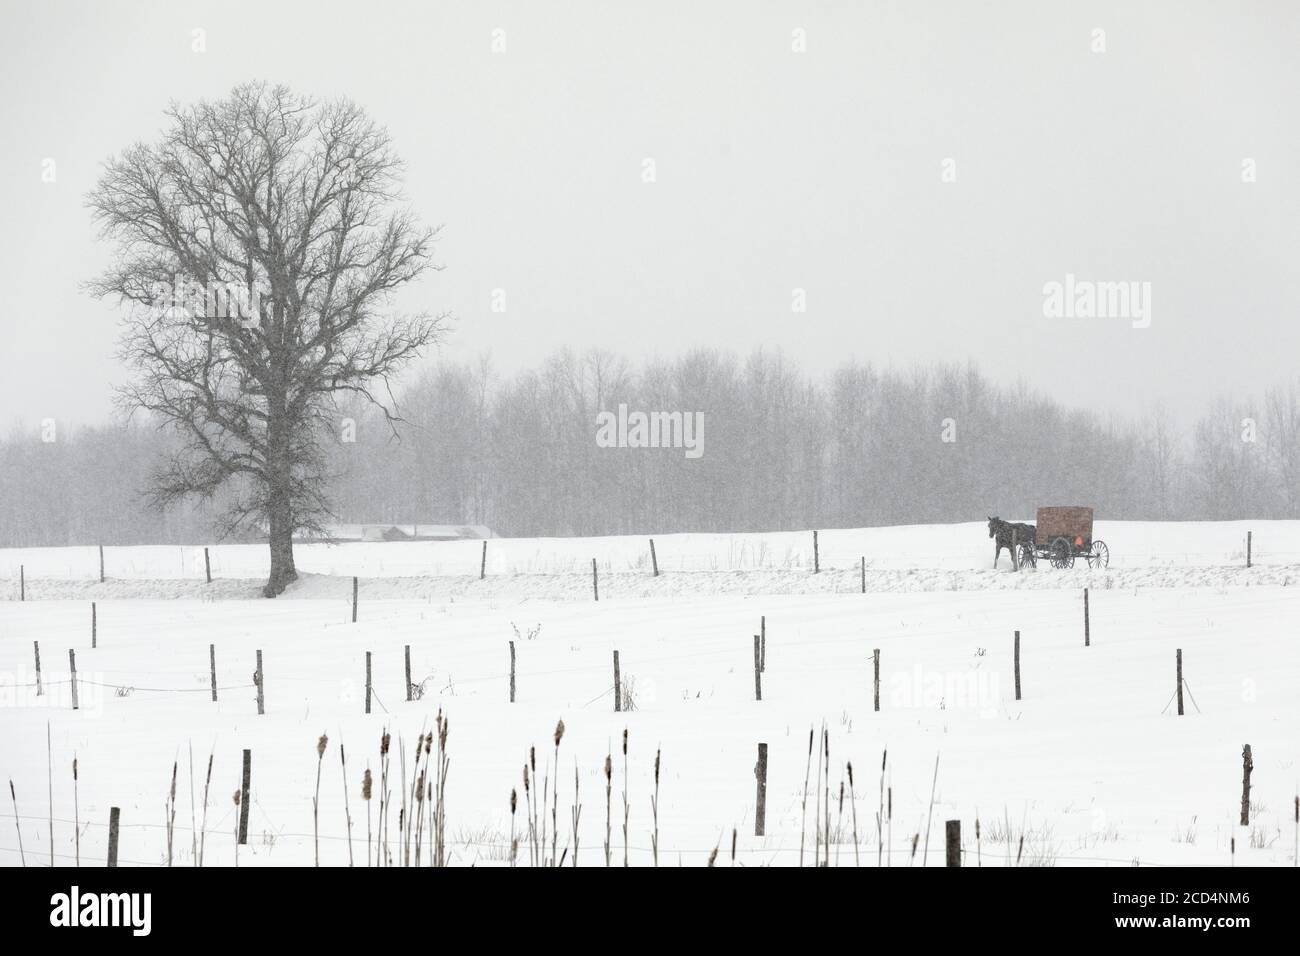 Mohawk Valley, New York State: Amish Pferd und Buggy auf der Straße während eines Schneesturms. Stockfoto